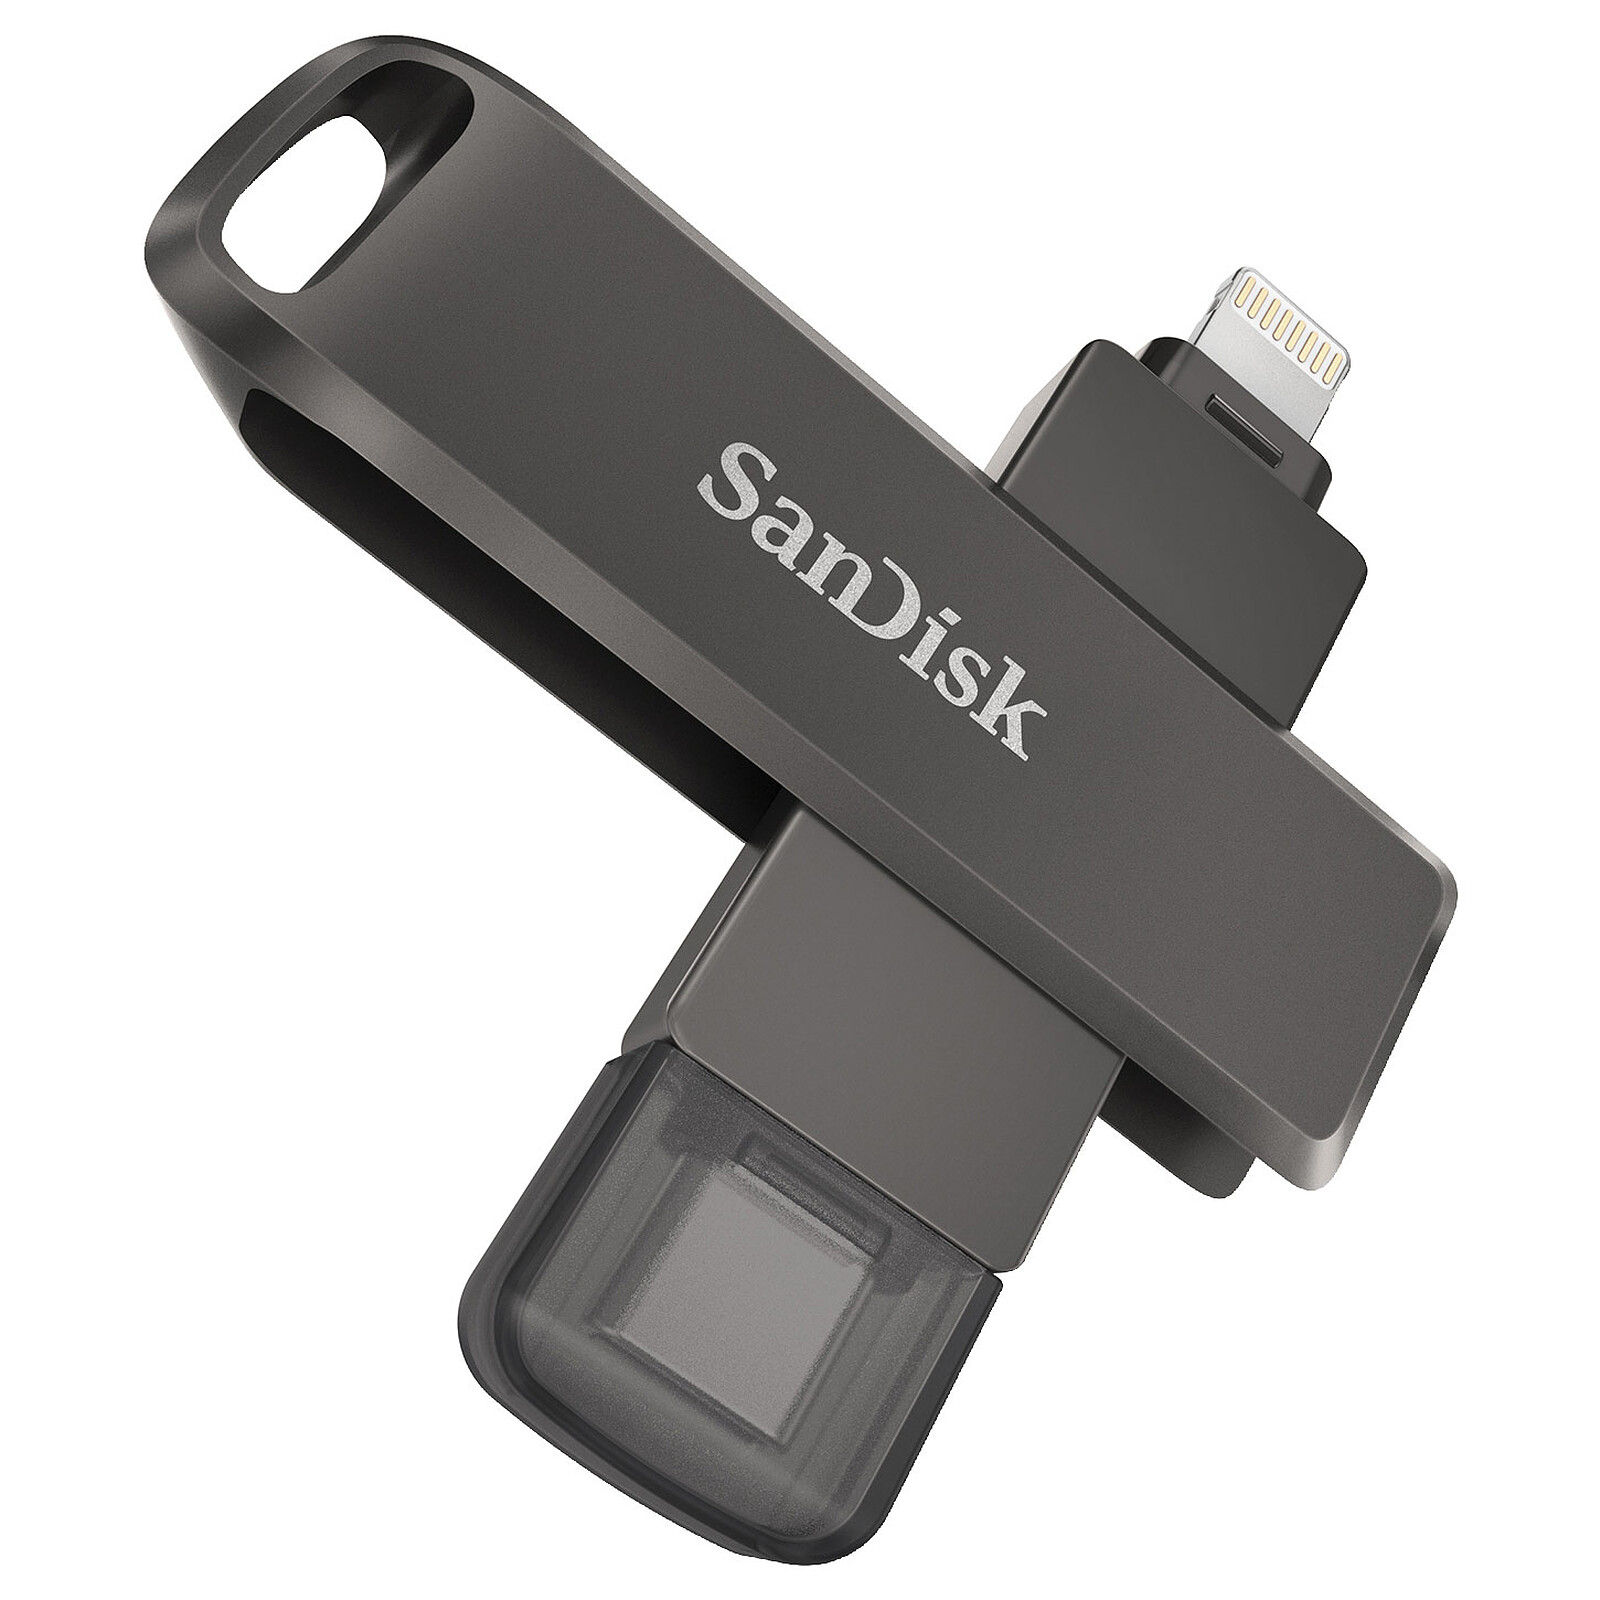 SanDisk Extreme Go USB 3.0 64 Go - Clé USB - LDLC